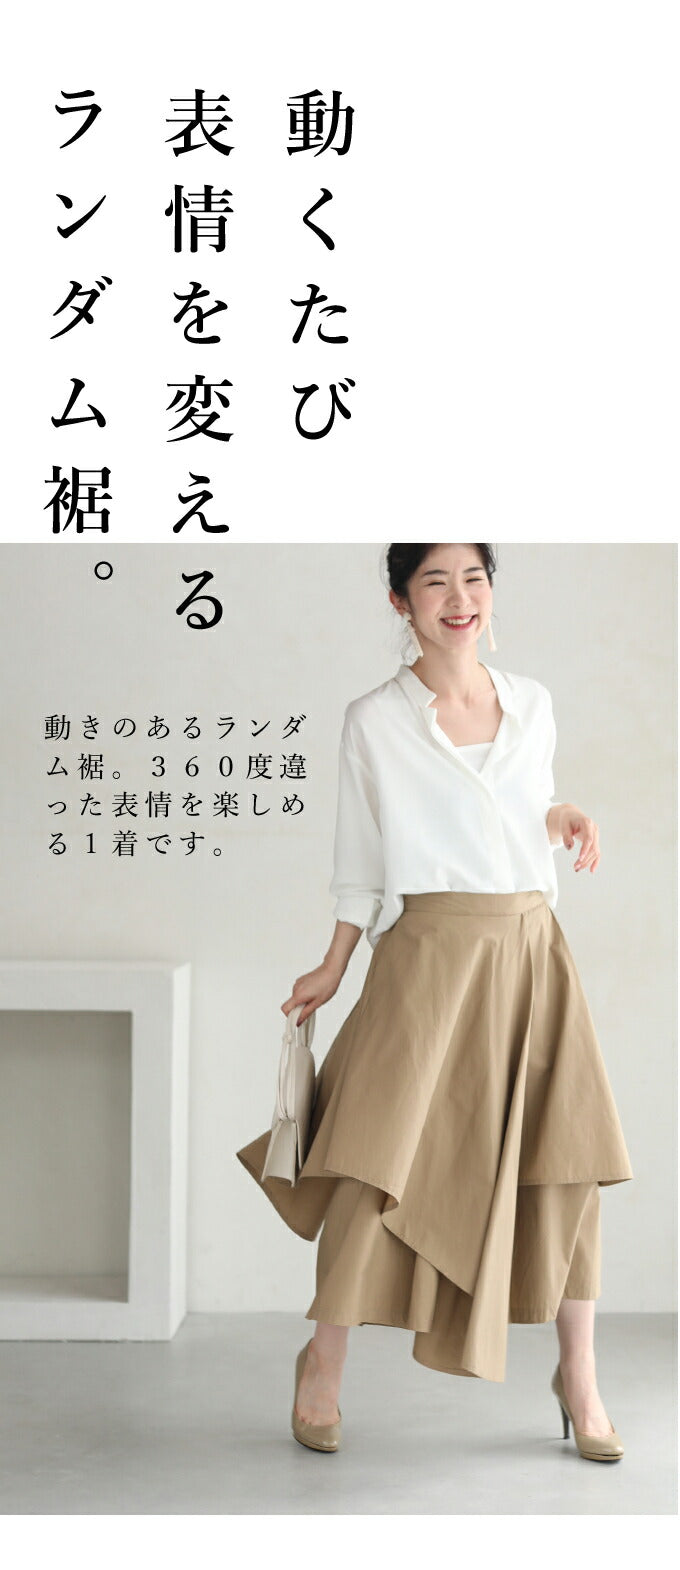 【wc-wk00386】(M~L対応)スカートに見えるオリガミパンツ